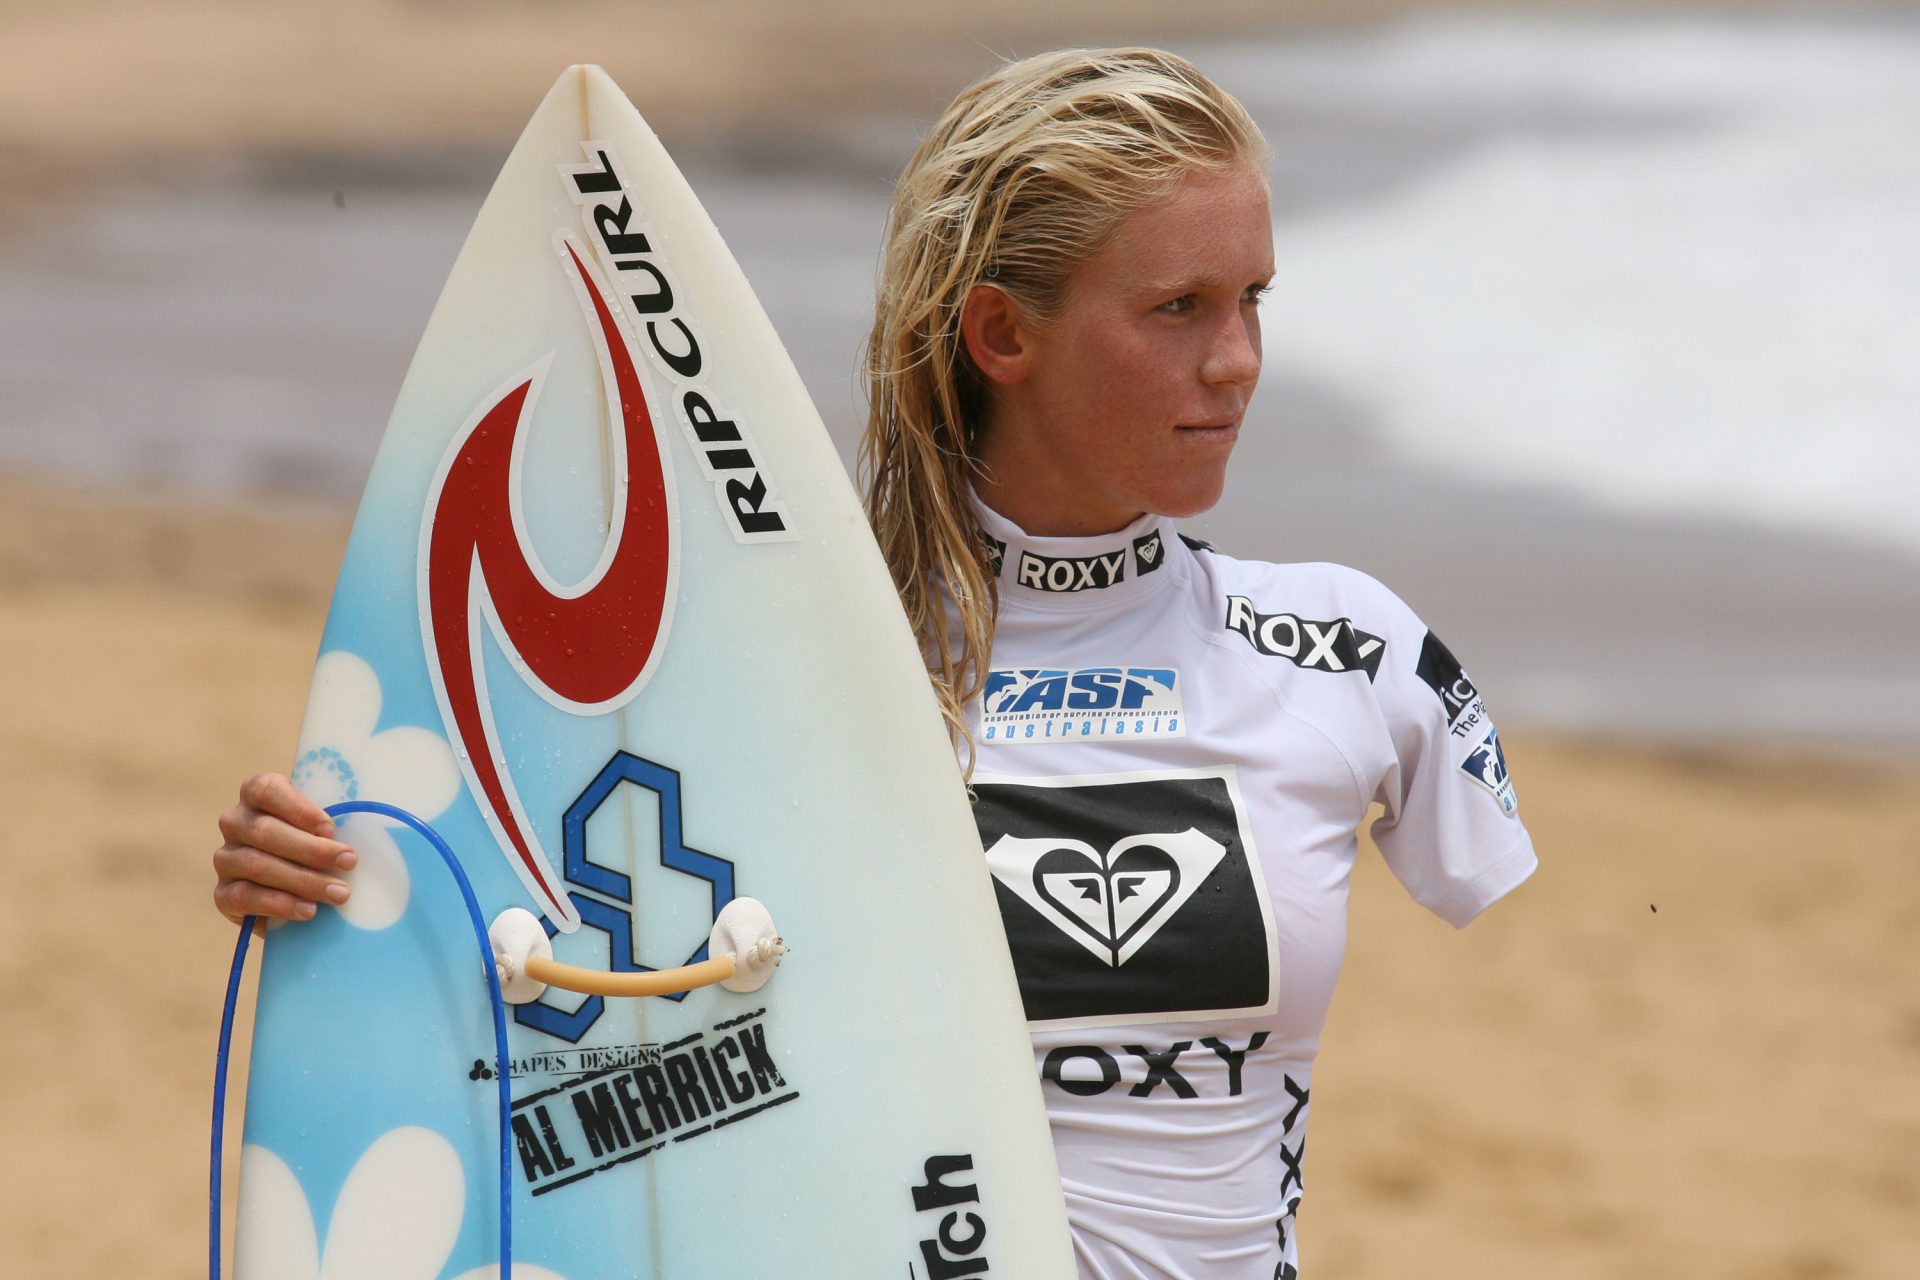 Bethany Hamilton: sopravvissuta all'attacco di uno squalo mentre faceva surf